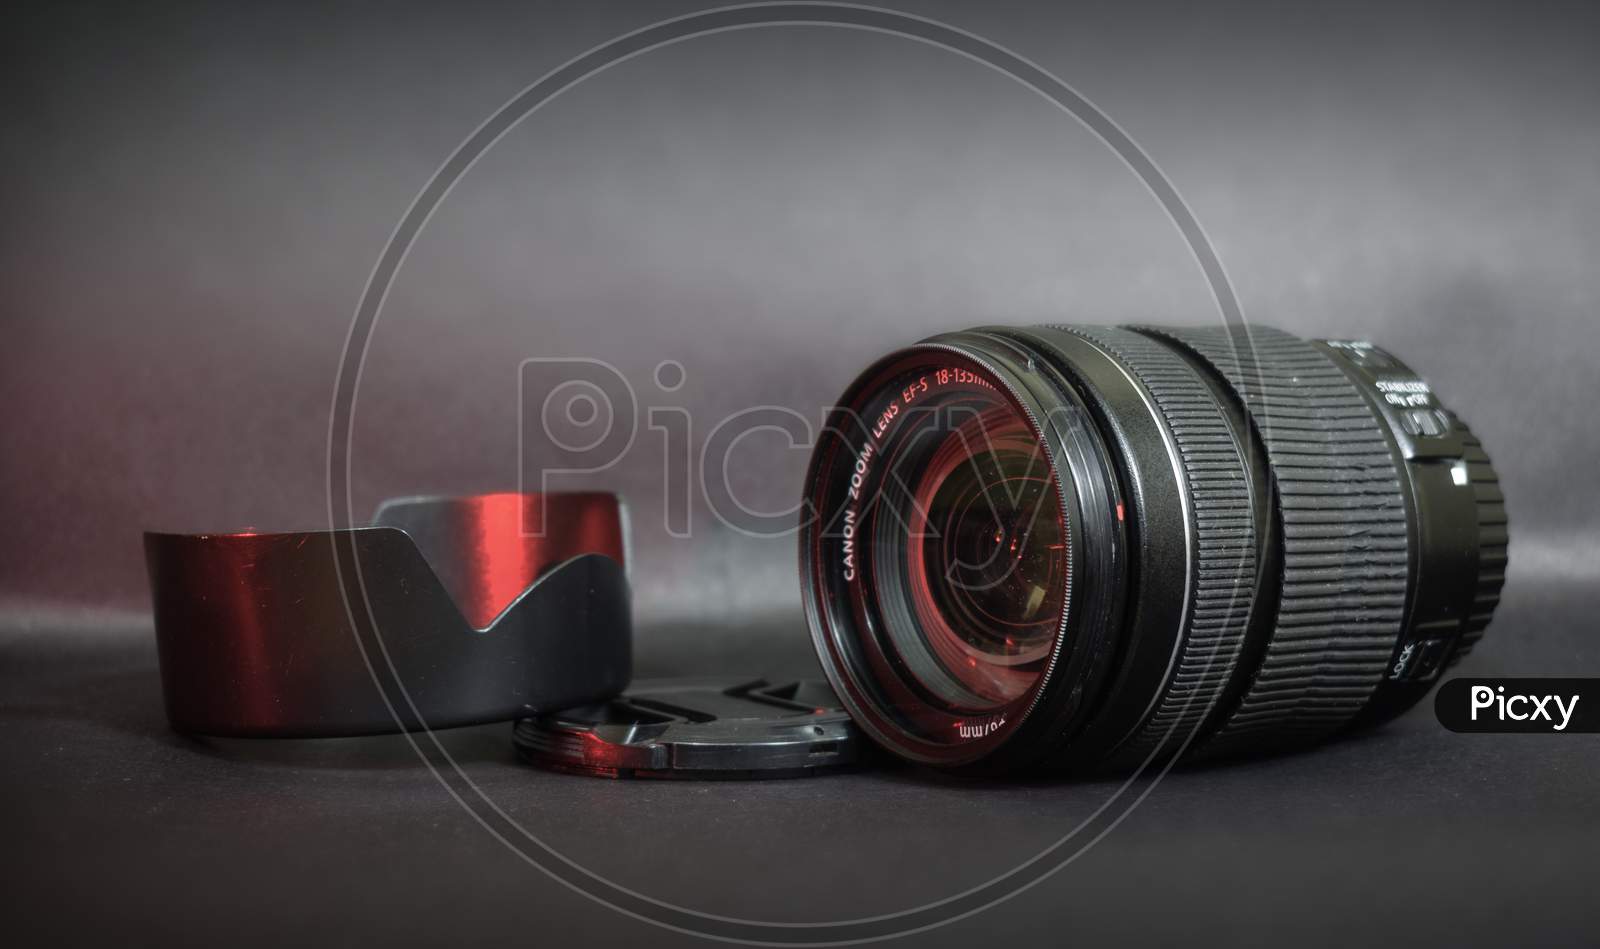 Canon EFS 18-135mm Lens